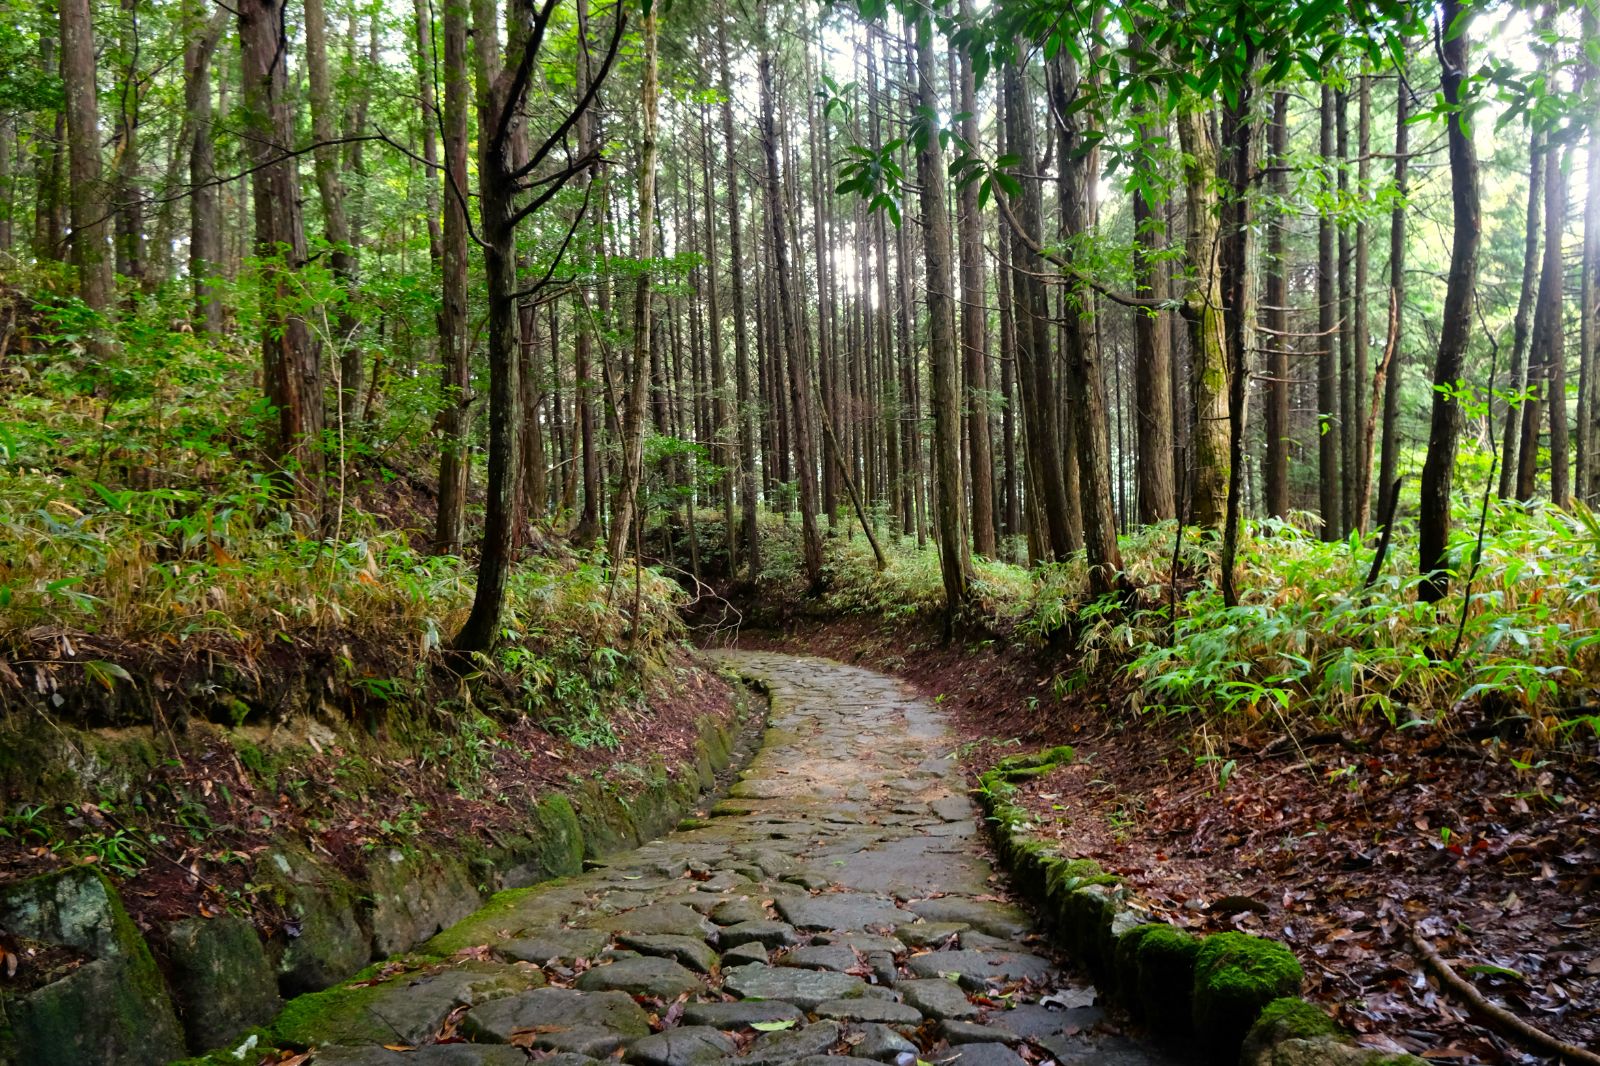 Samurai trail in Kiso Valley